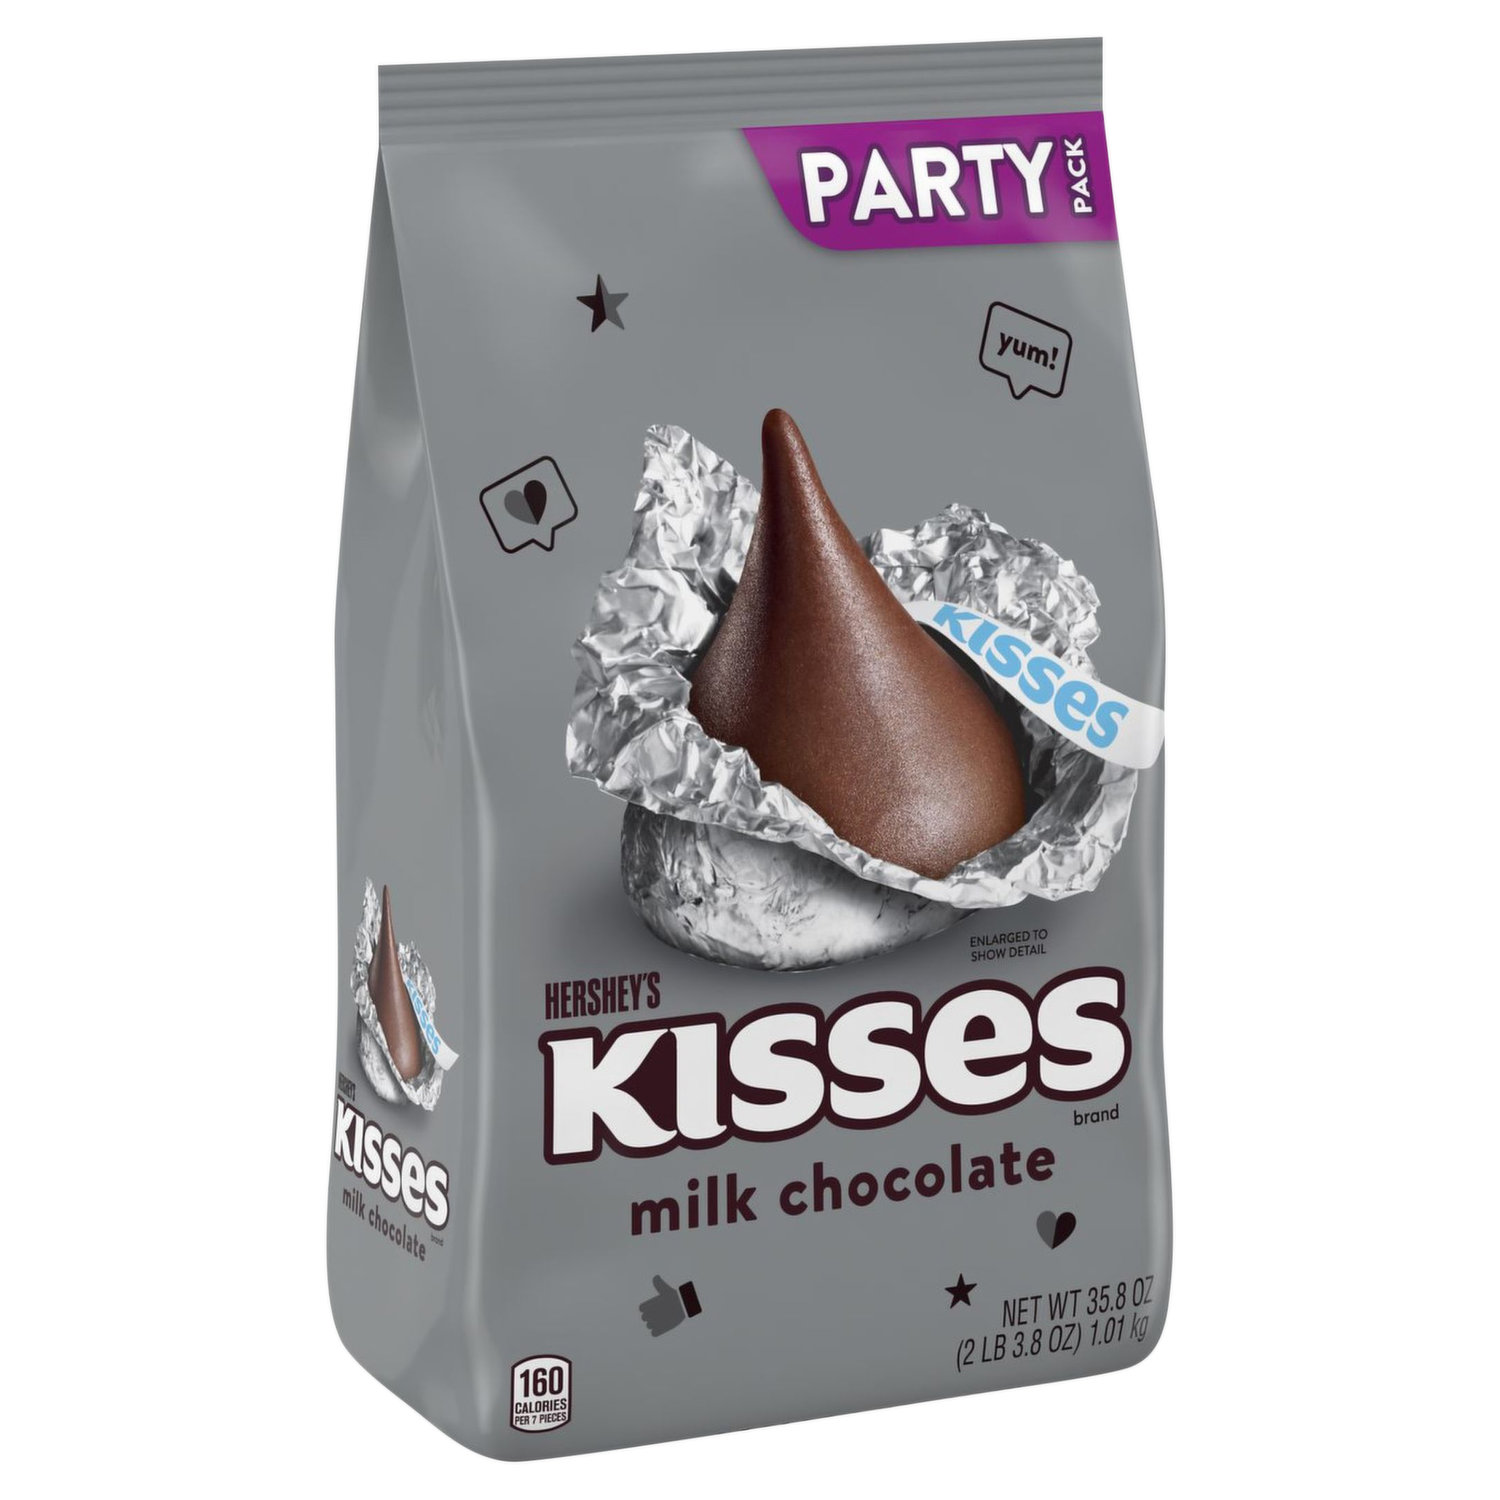 Hershey's Milk Chocolate (Snack Size)